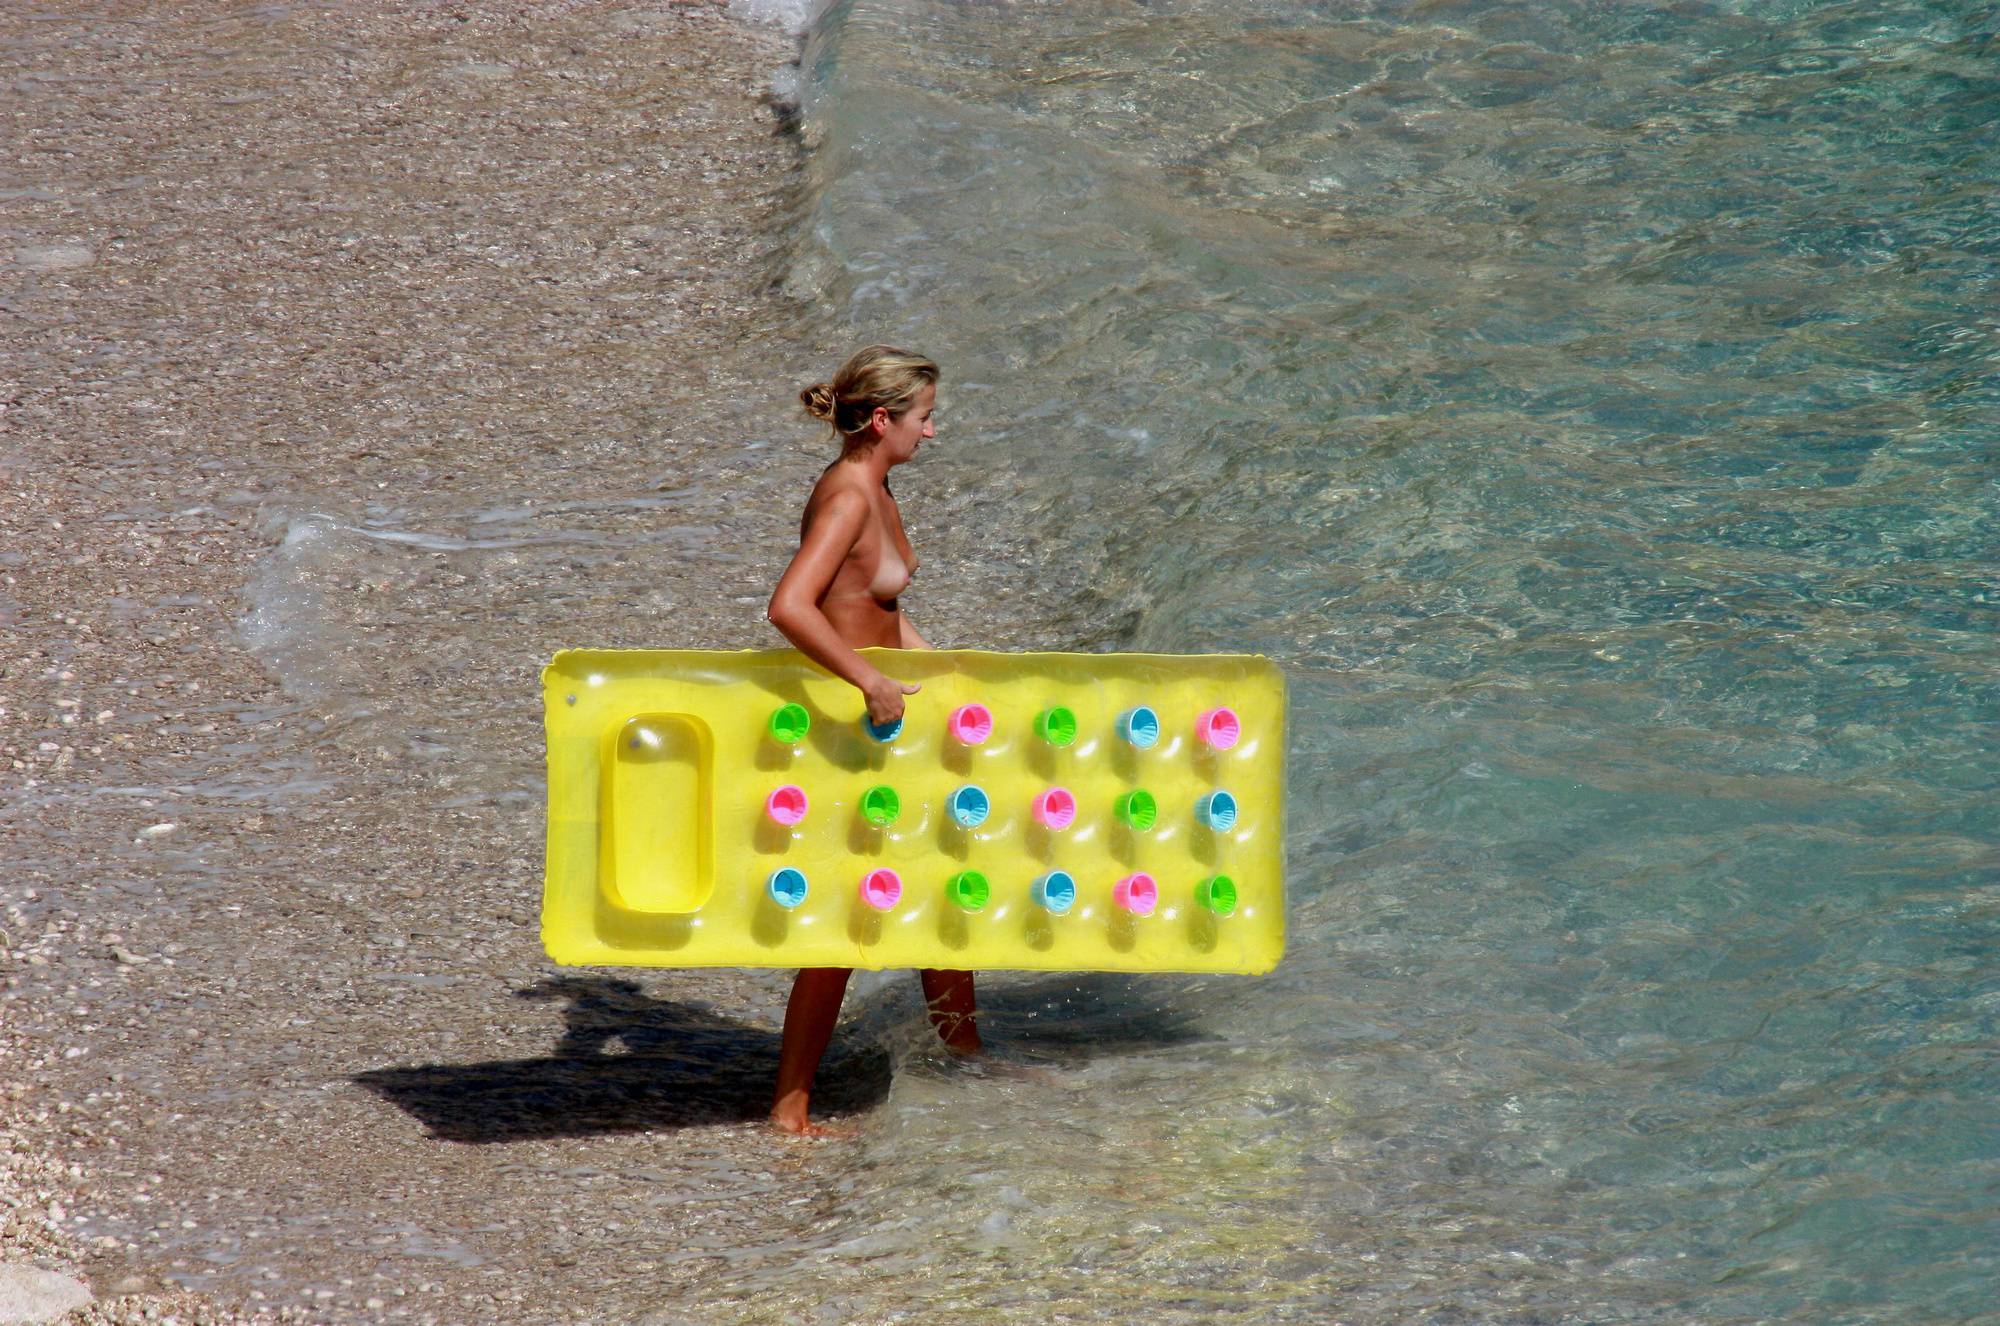 Nudist Yellow Beach Girls - 1